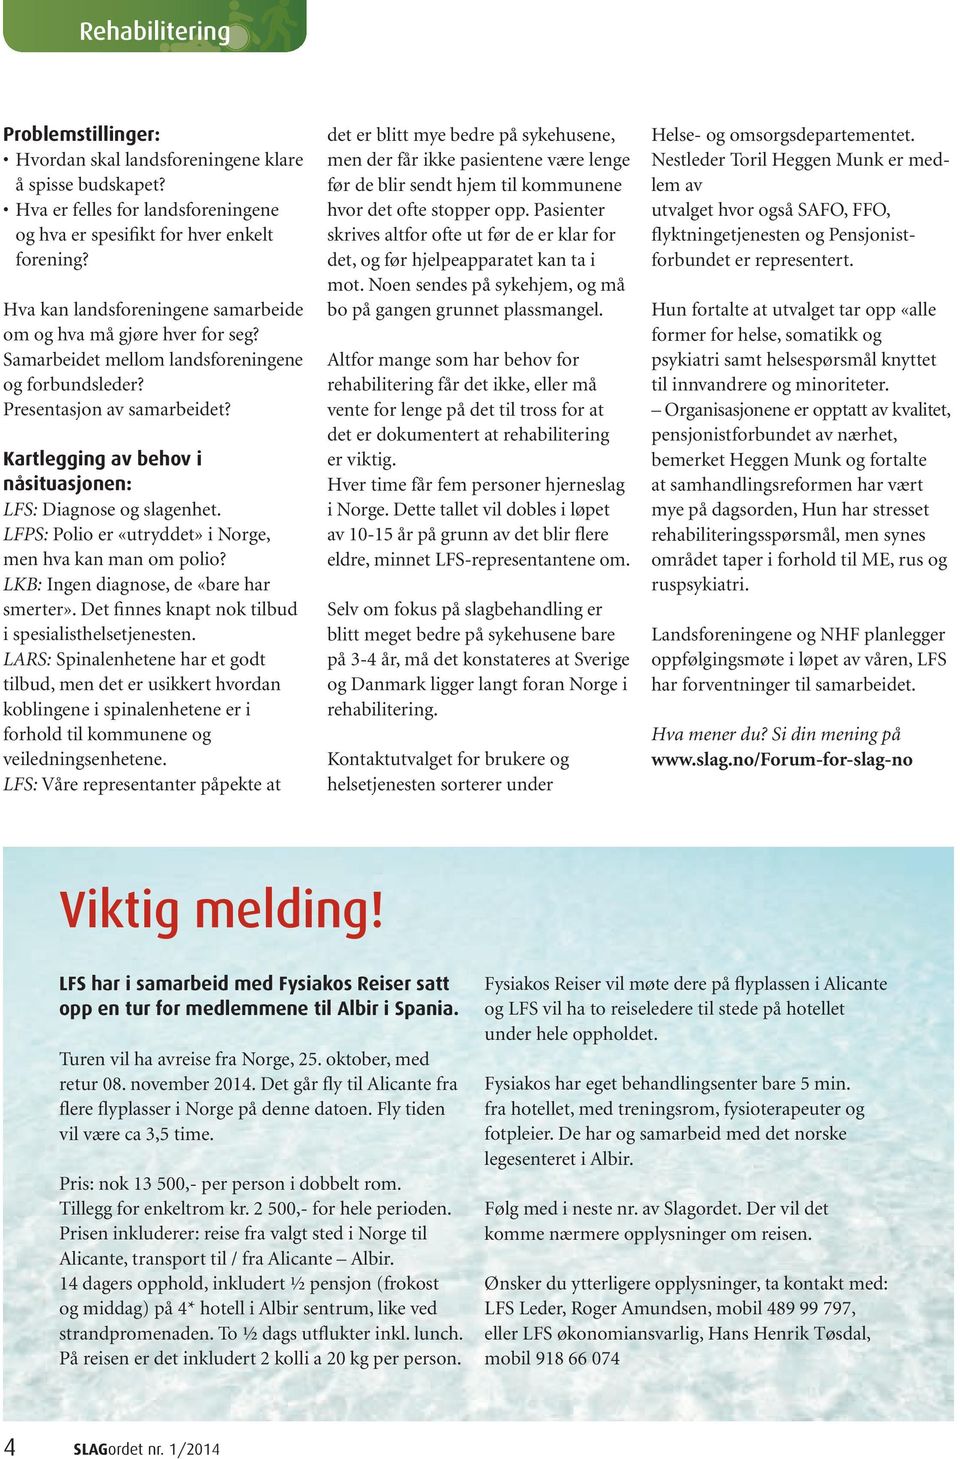 Kartlegging av behov i nåsituasjonen: LFS: Diagnose og slagenhet. LFPS: Polio er «utryddet» i Norge, men hva kan man om polio? LKB: Ingen diagnose, de «bare har smerter».